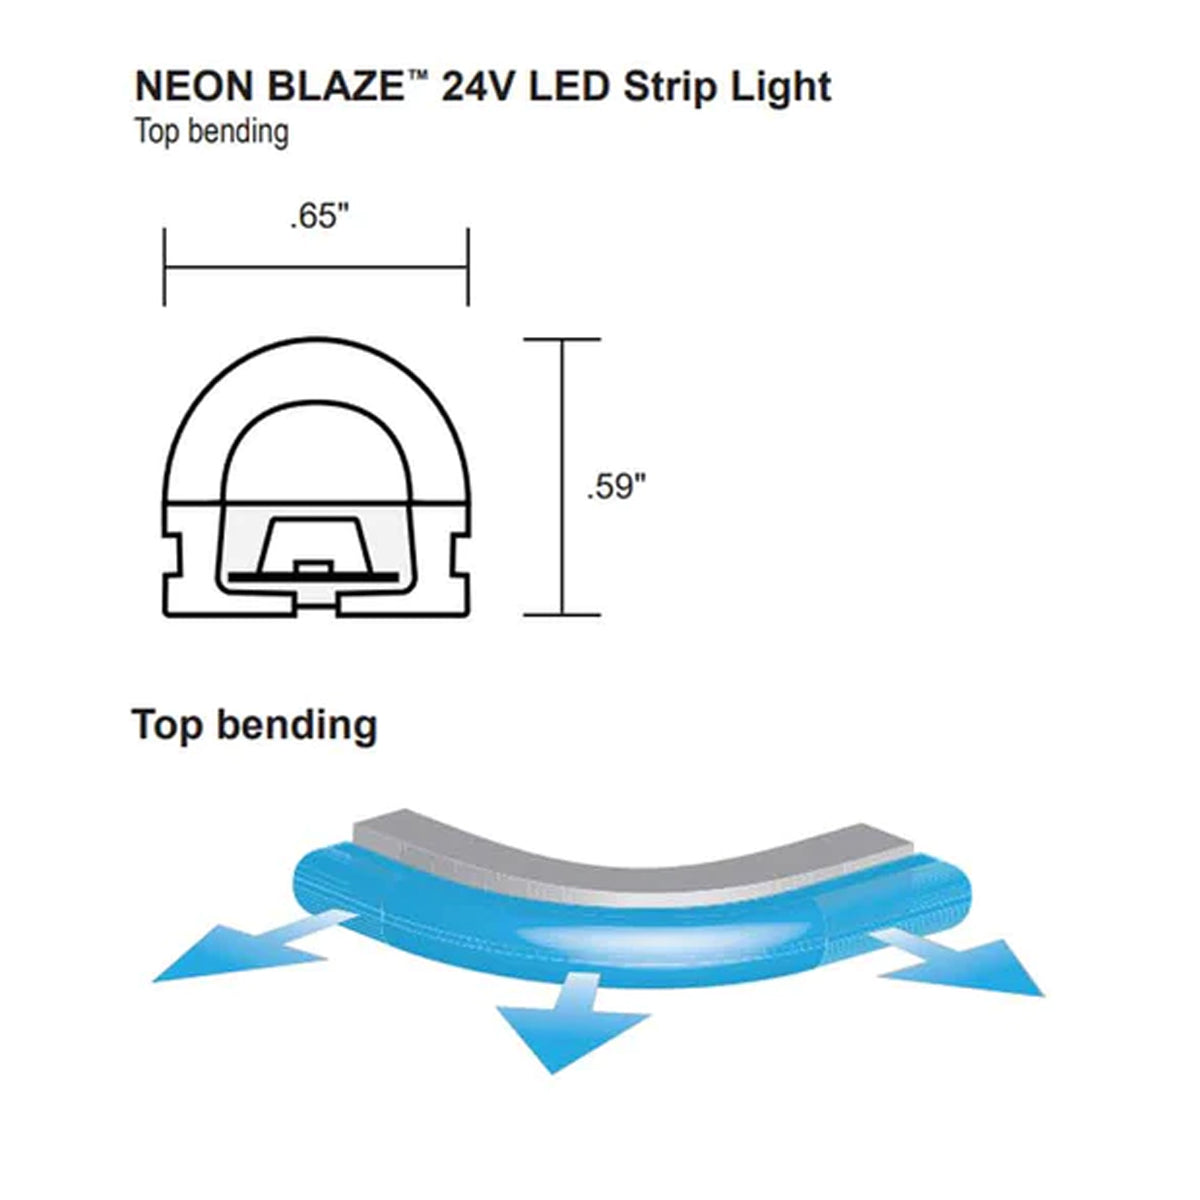 Neon BLAZE LED Neon Strip Light, Blue, 24V, Top Bending - Bees Lighting